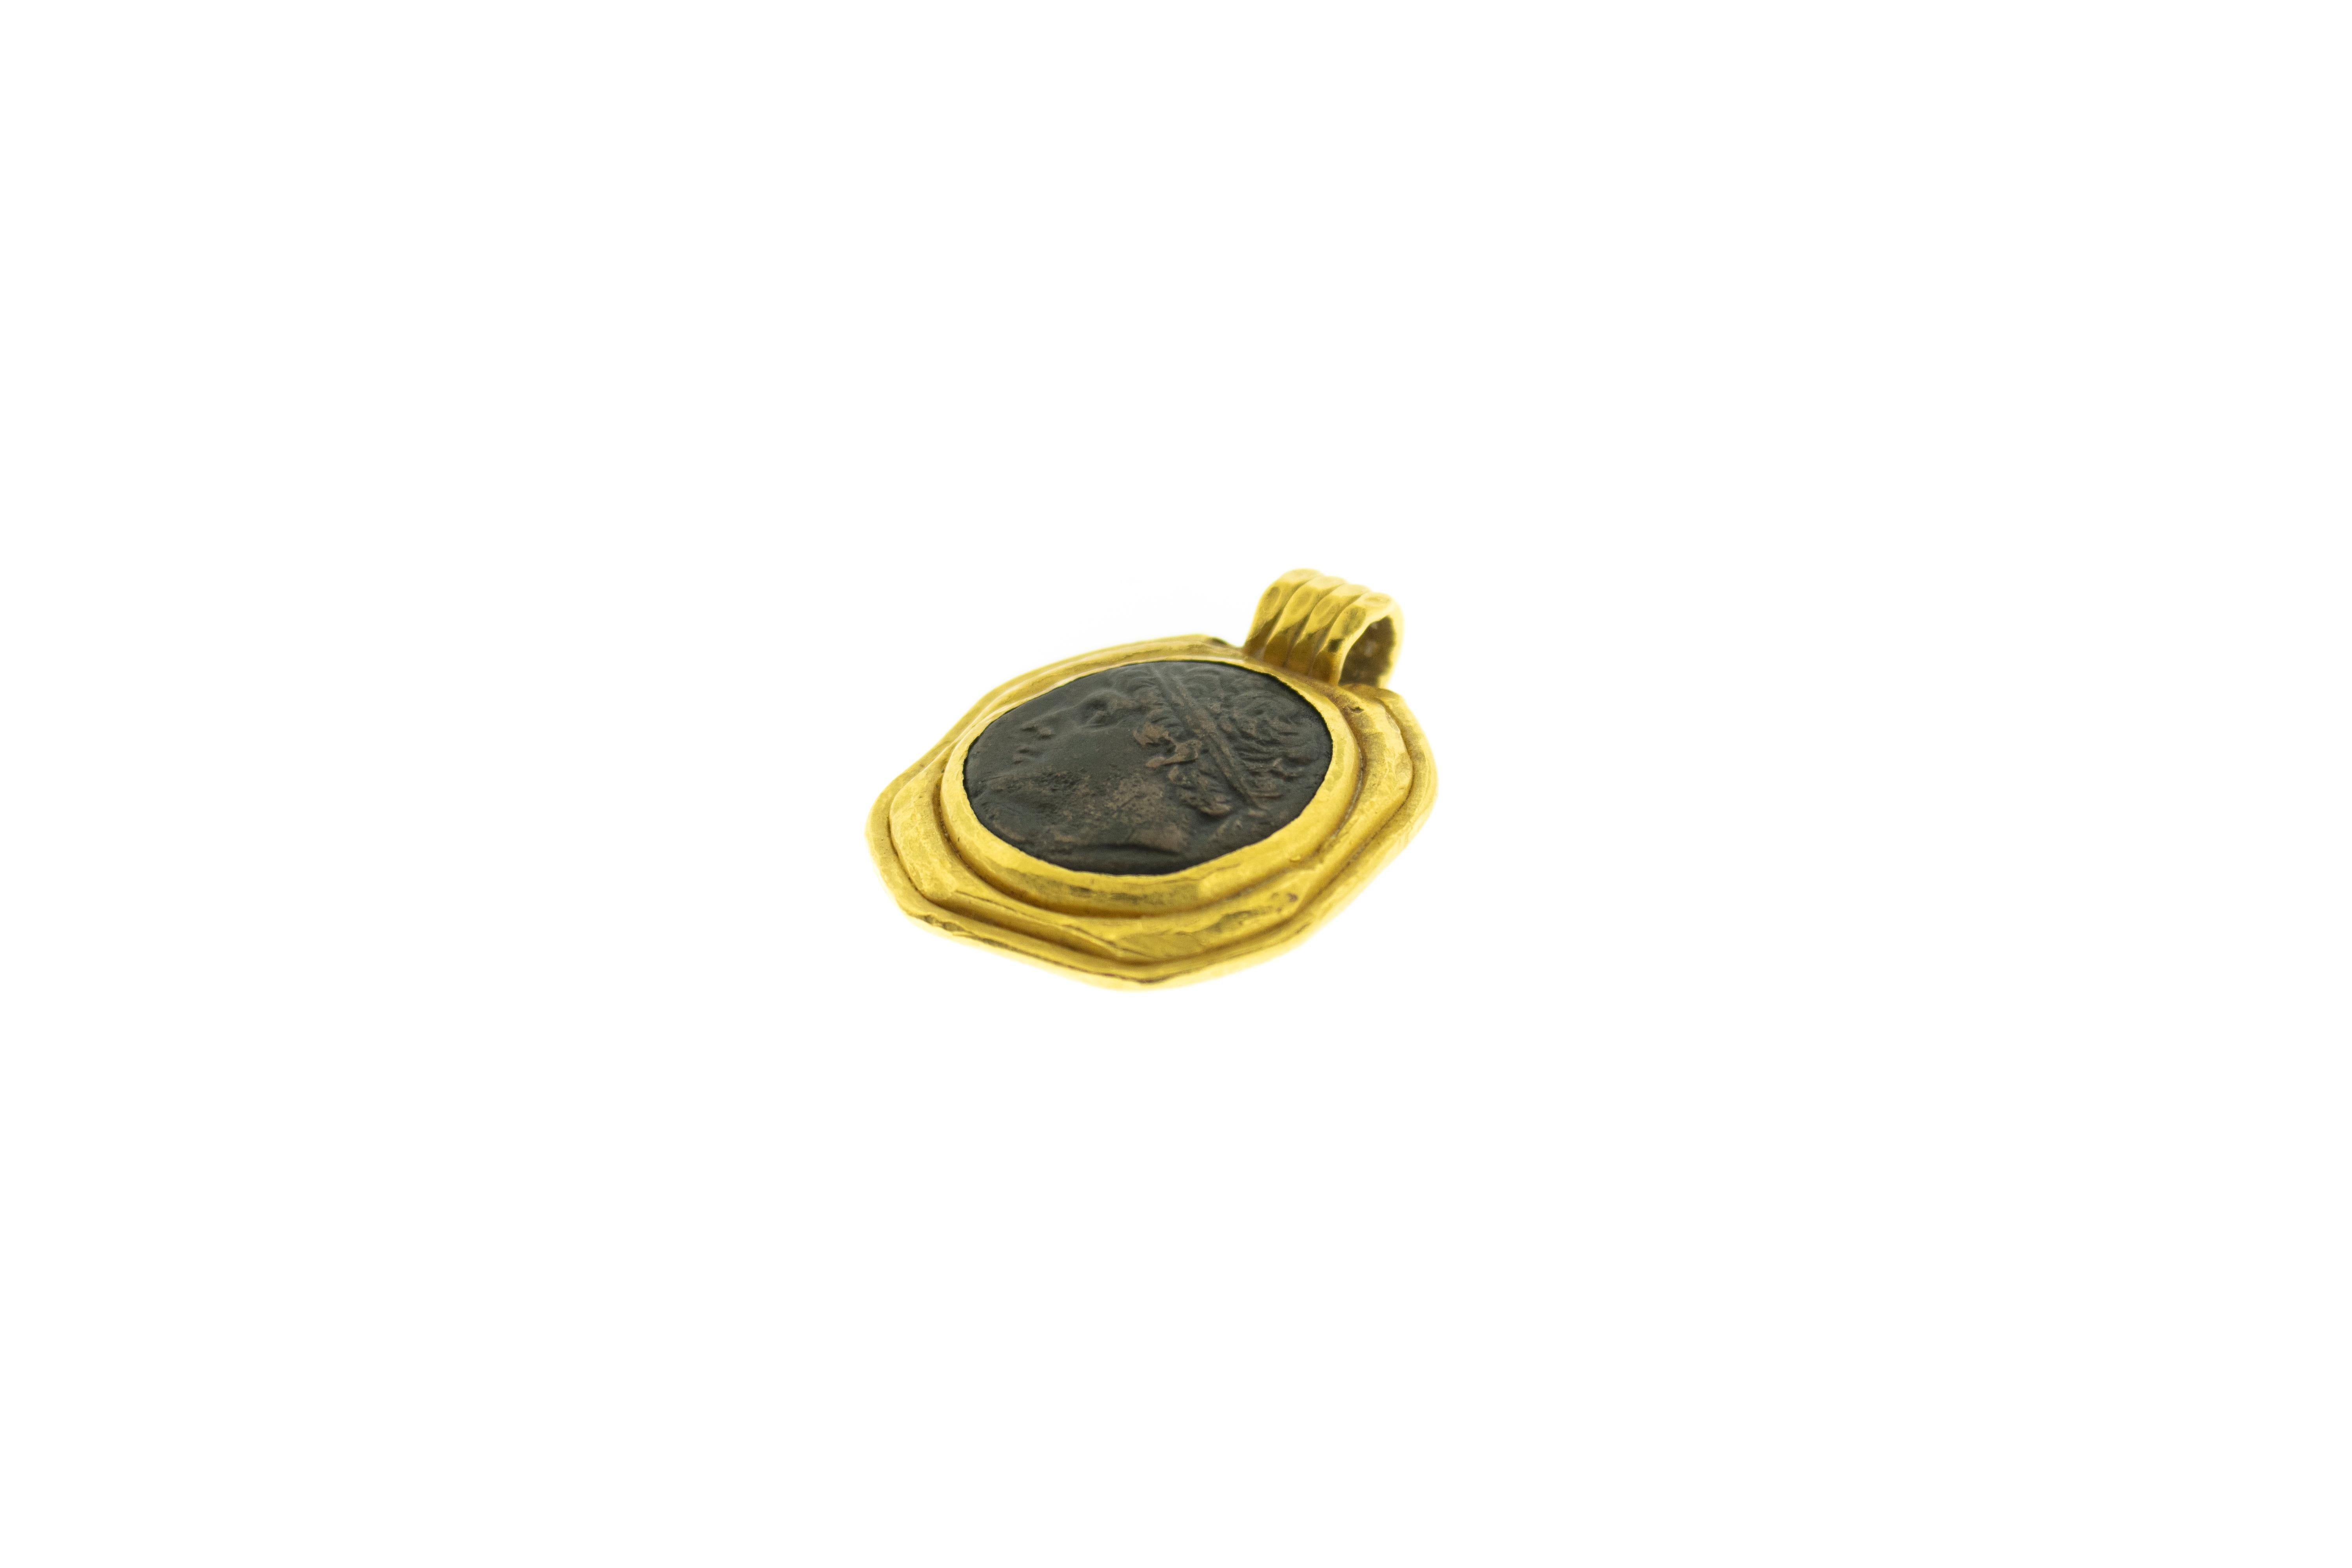 Antike Artefakt in 22k Gold Anhänger montiert. Antike griechische oder römische Münze in 22k Gold montiert. Gesamtgewicht 47,45 Gramm. 22k Gold Gehäuse wurde nicht in der alten Zeit gemacht. Höhe 1,75 Zoll Breite 1,5